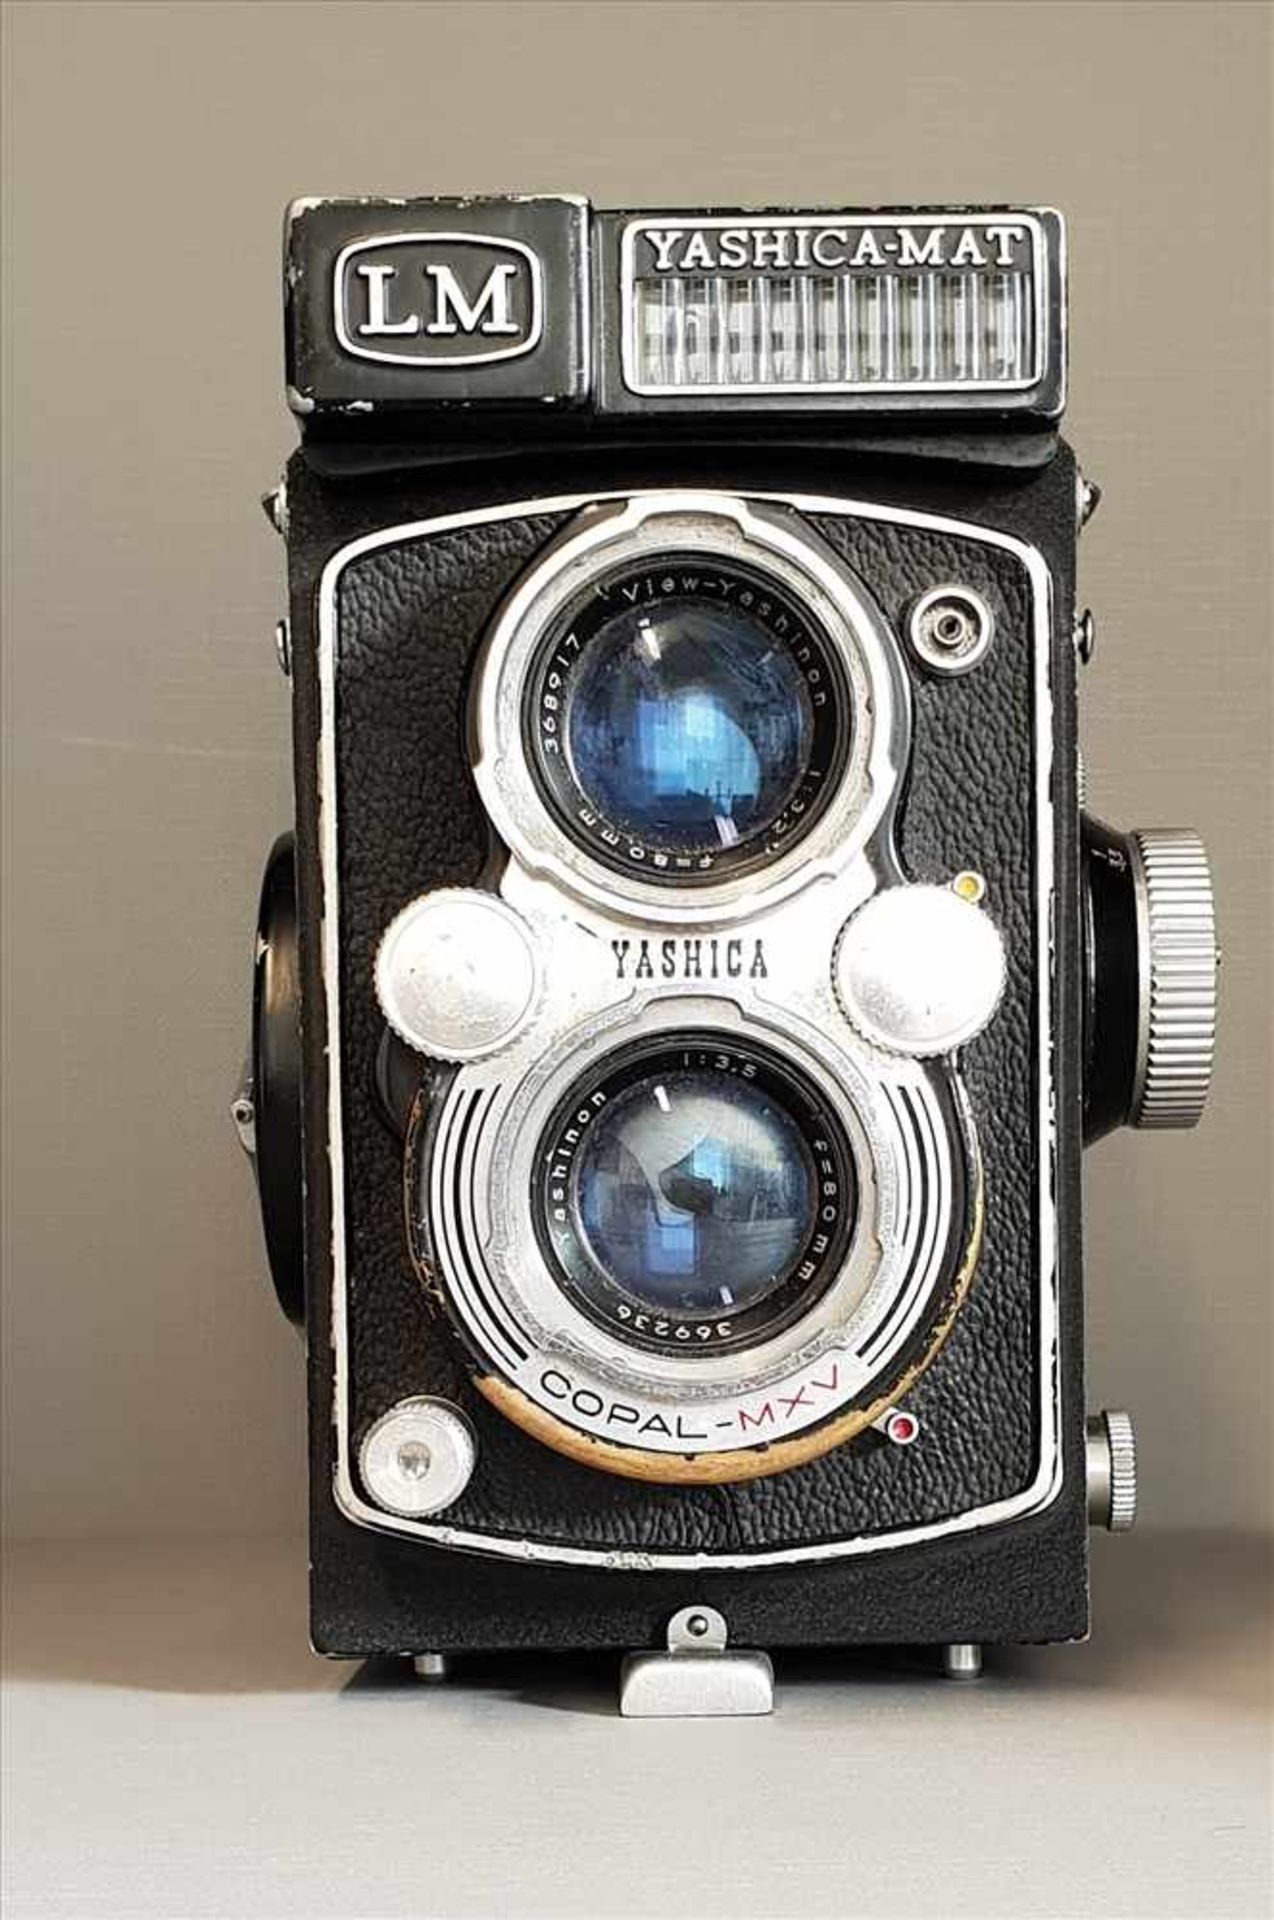 Yashica-Mat LM , Analog Kamera, 1950er Jahre, Nr.: MTL 2111816, 1124g, Funktion nicht überprüft,